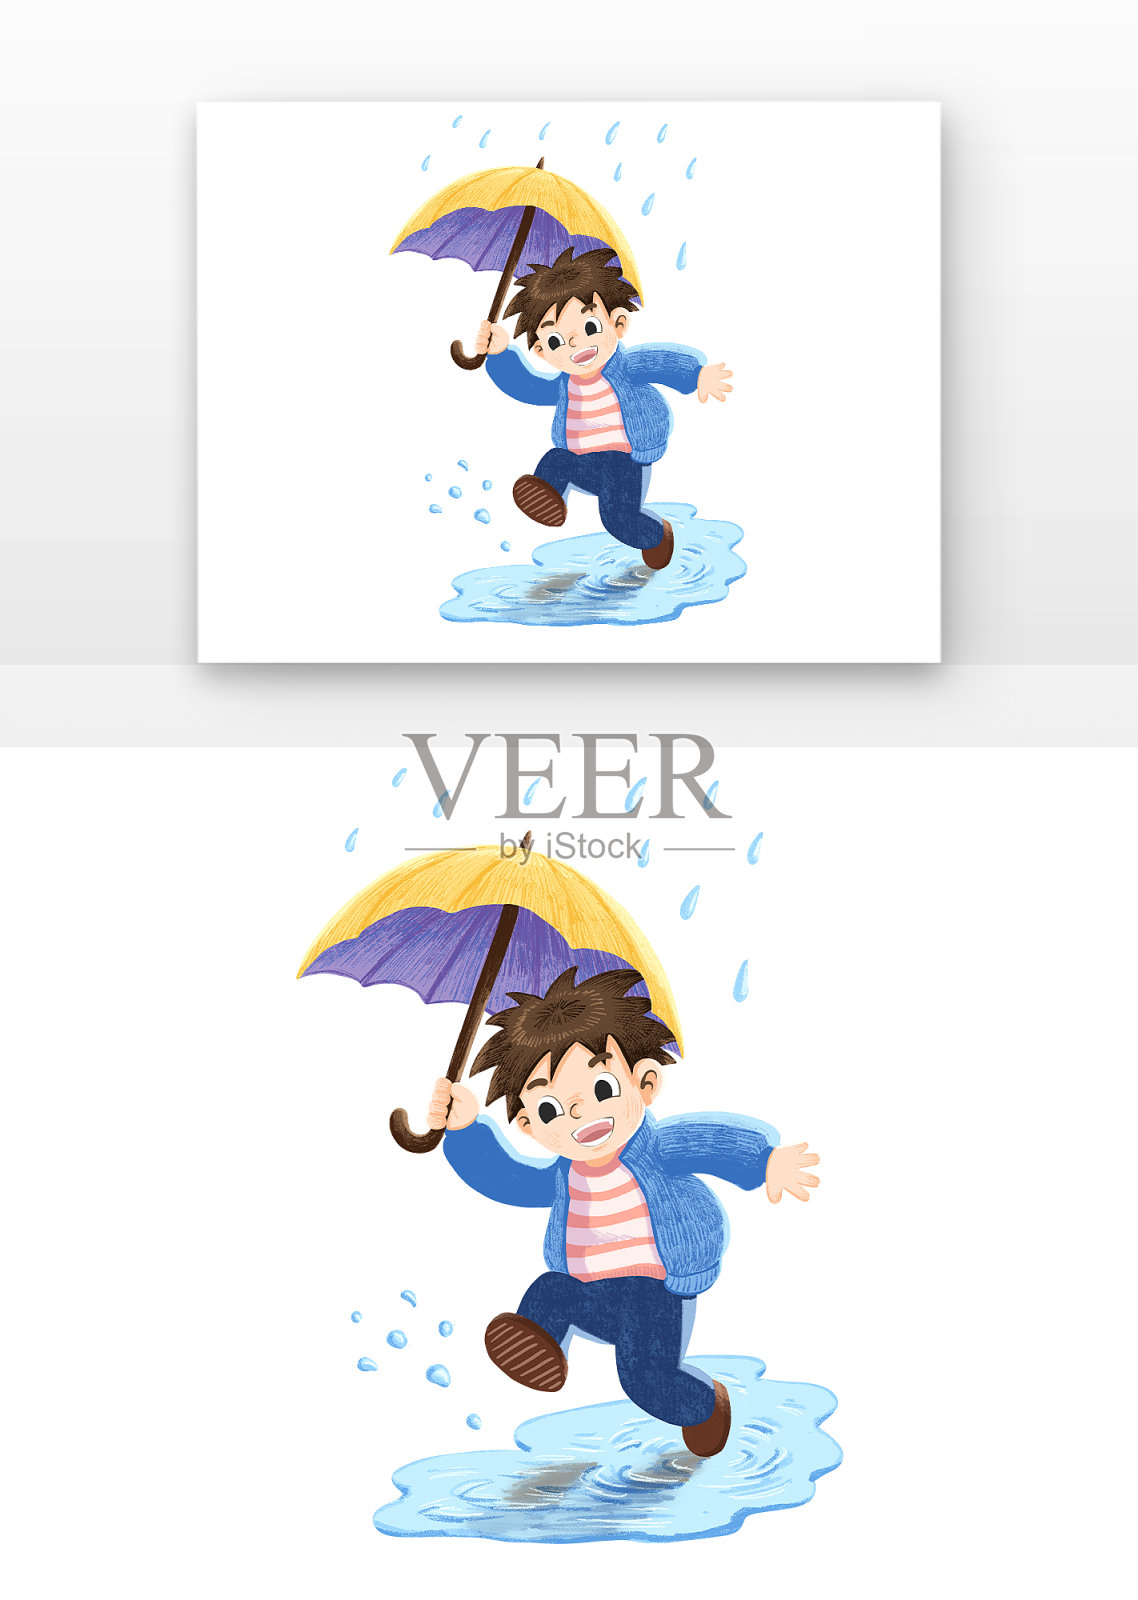 甜蜜情侣打伞下雨天场景图片素材[PSD] – 设计小咖